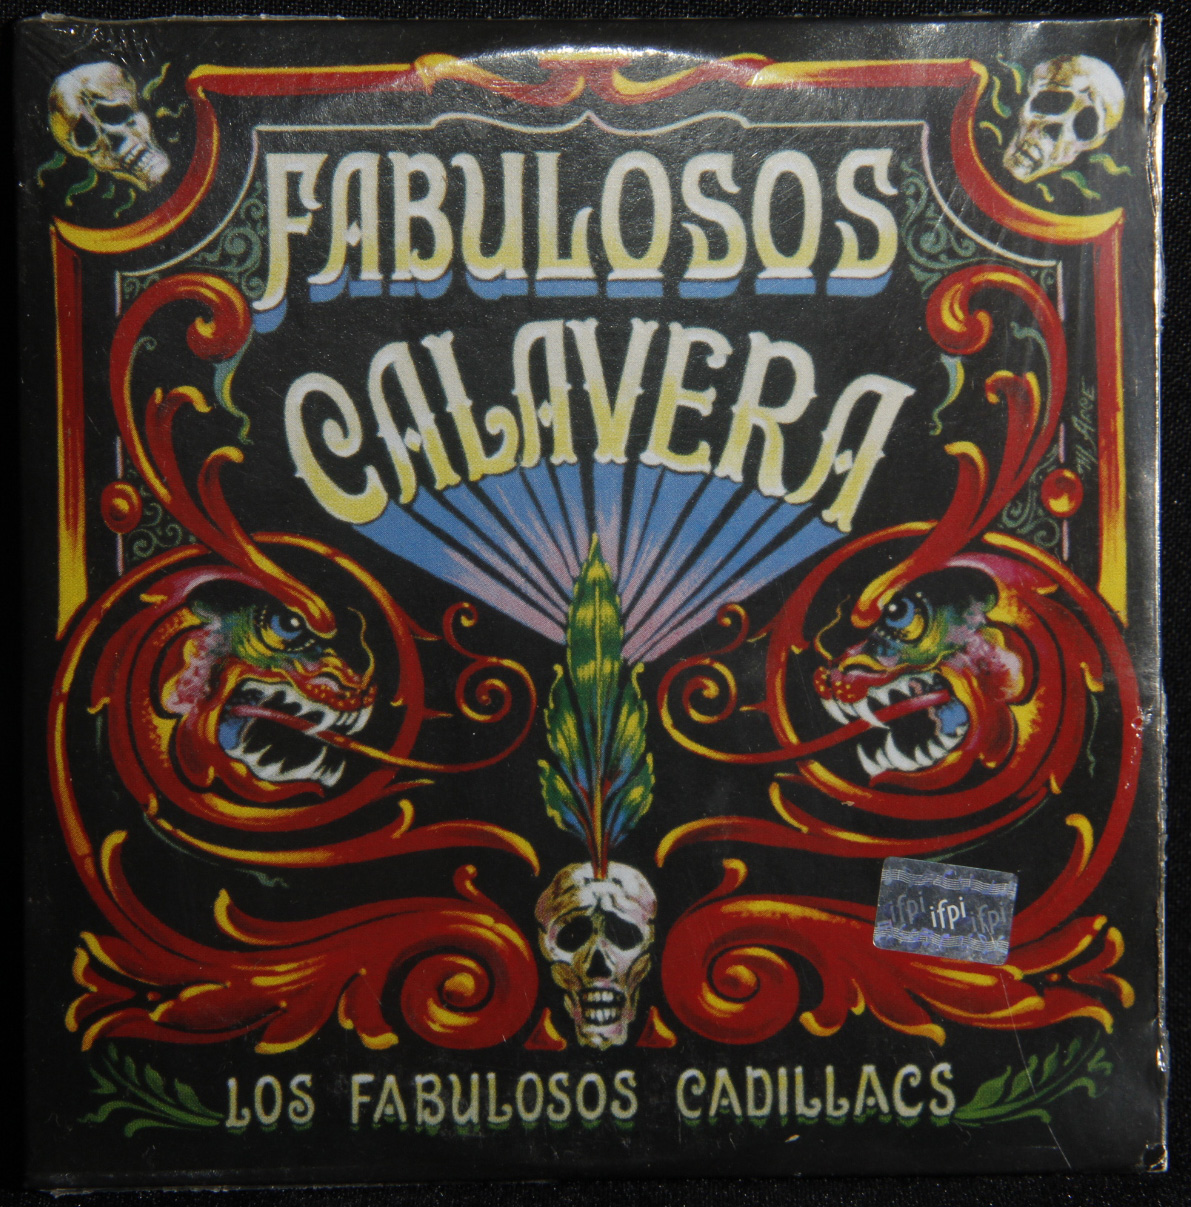 Los Fabulosos Cadillacs – Fabulosos Calavera (1997) – Abismo